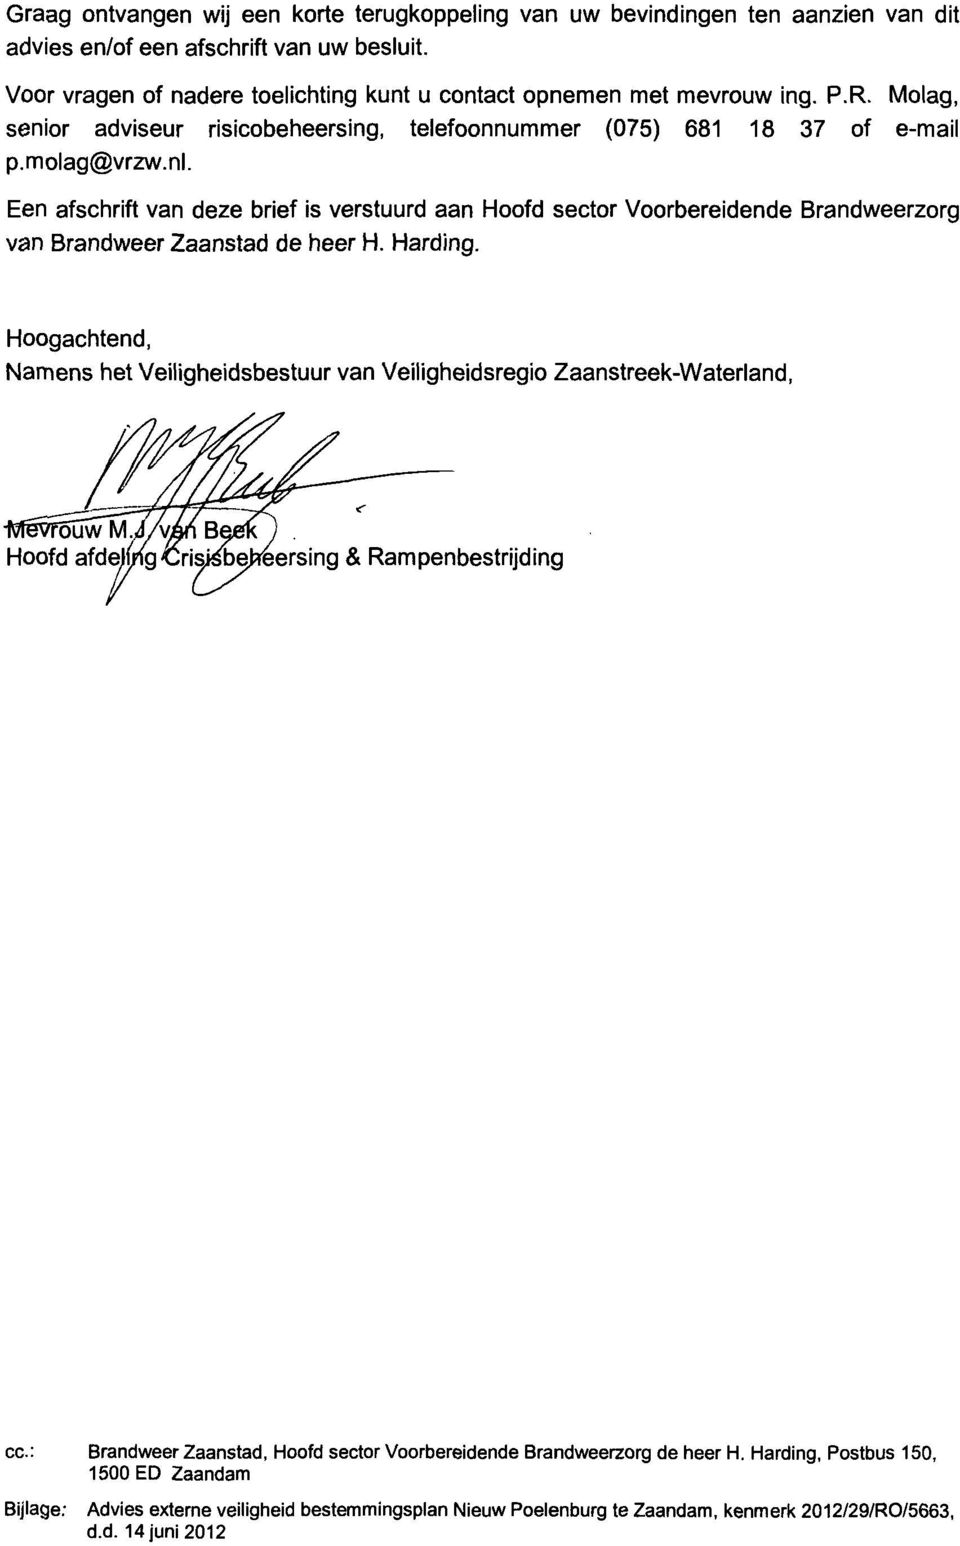 Een afschrift van deze brief is verstuurd aan Hoofd sector Voorbereidende Brandweerzorg van Brandweer Zaanstad de heer H. Harding.